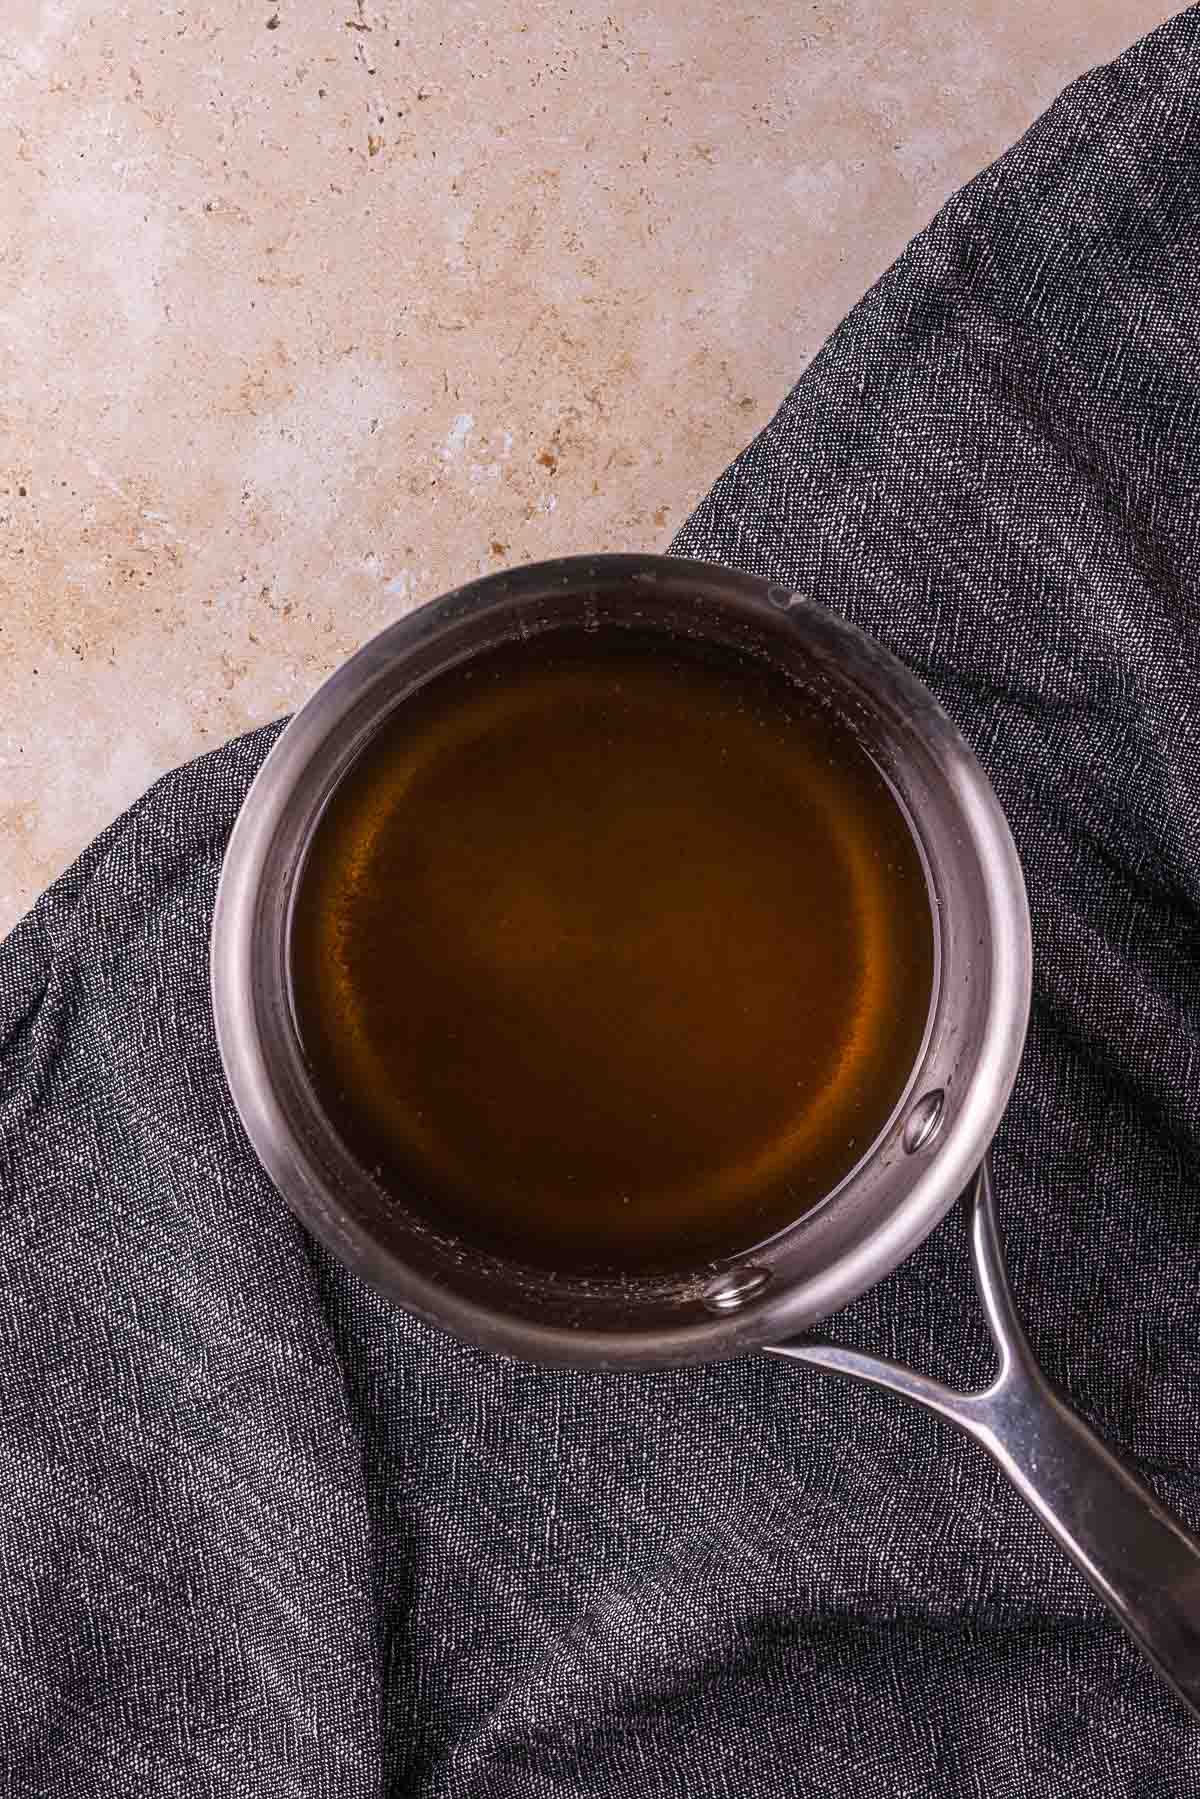 clear brown liquid in a saucepan on a blue towel